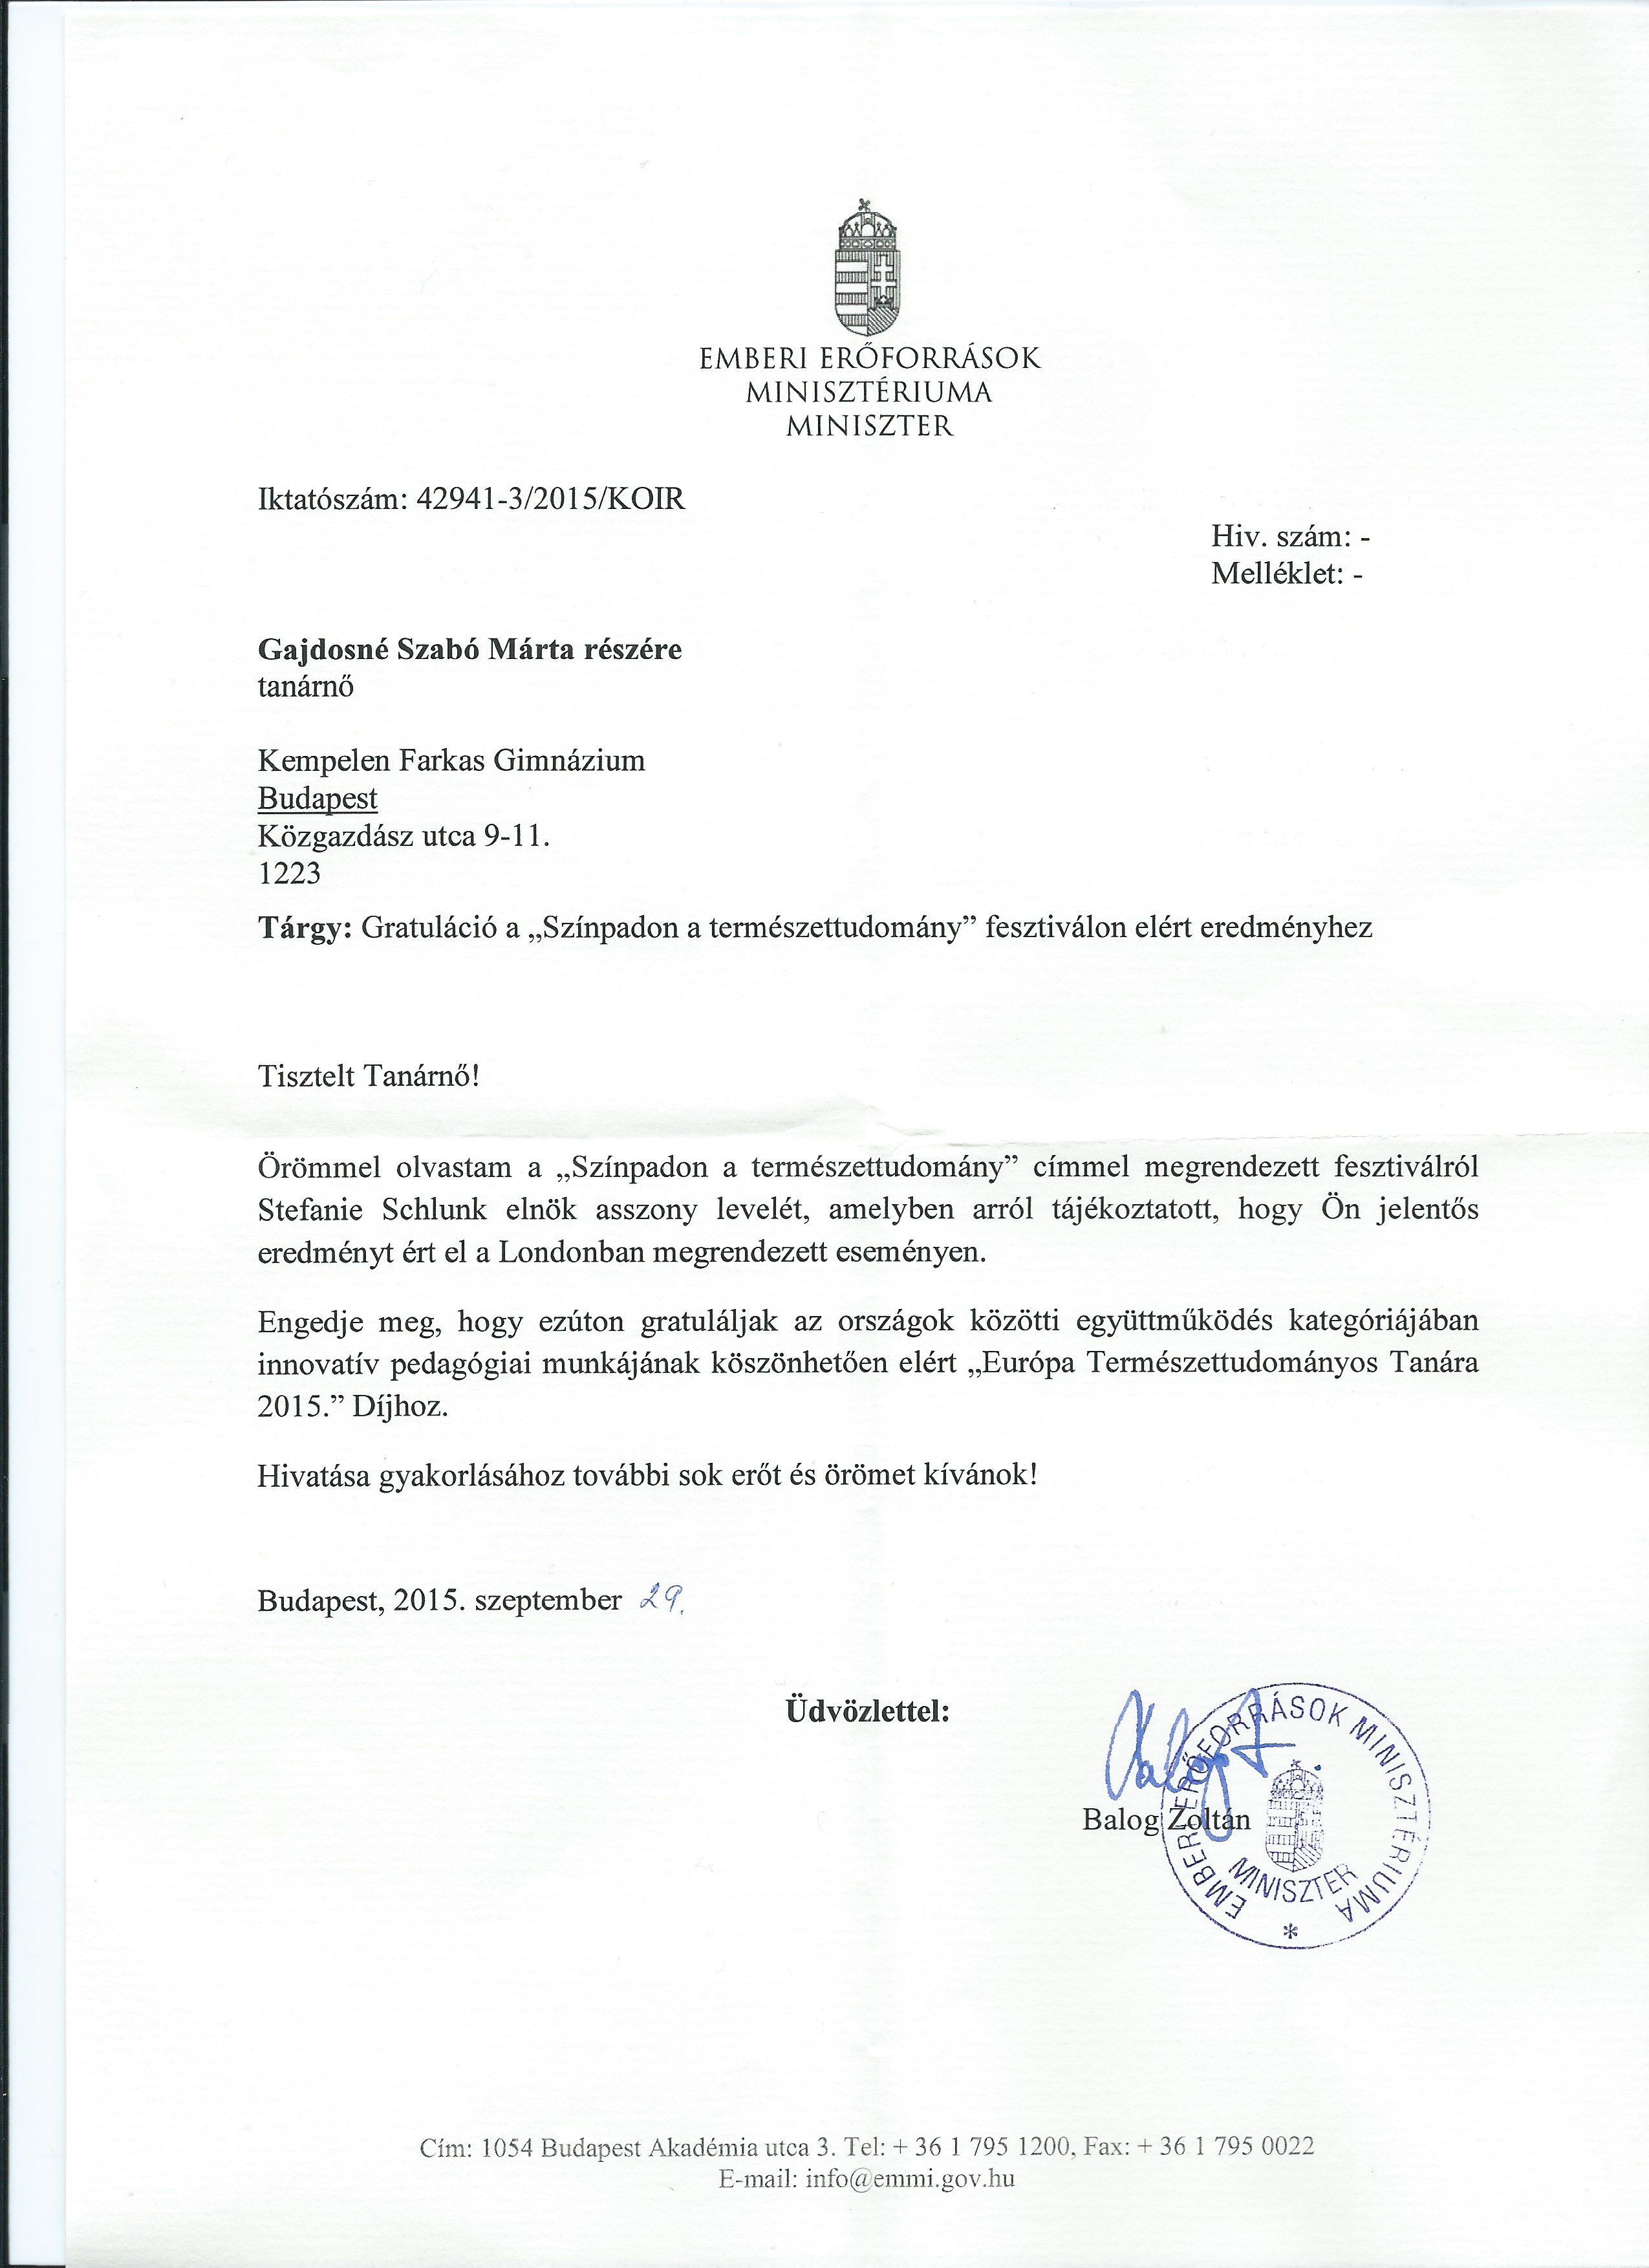 Balog Zoltán gratuláló levele Gajdosné Szabó Mártának